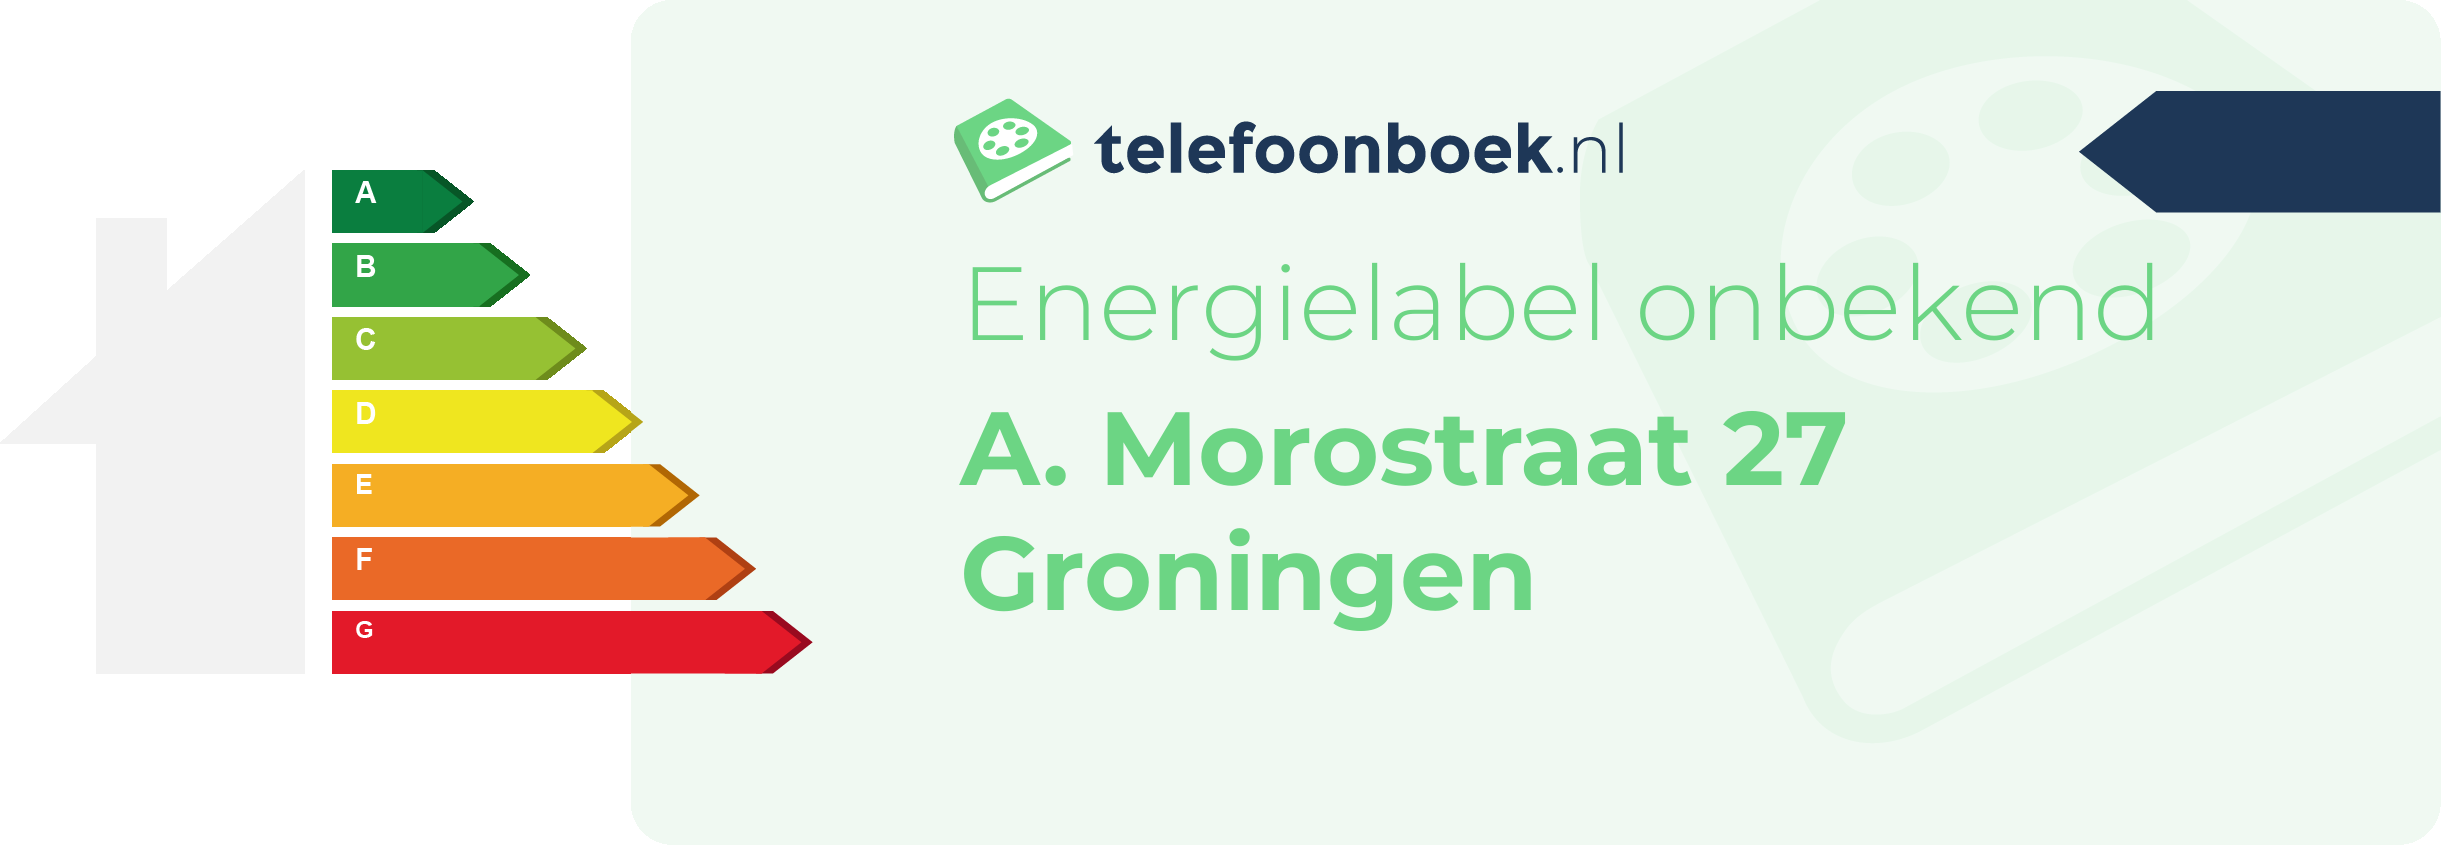 Energielabel A. Morostraat 27 Groningen